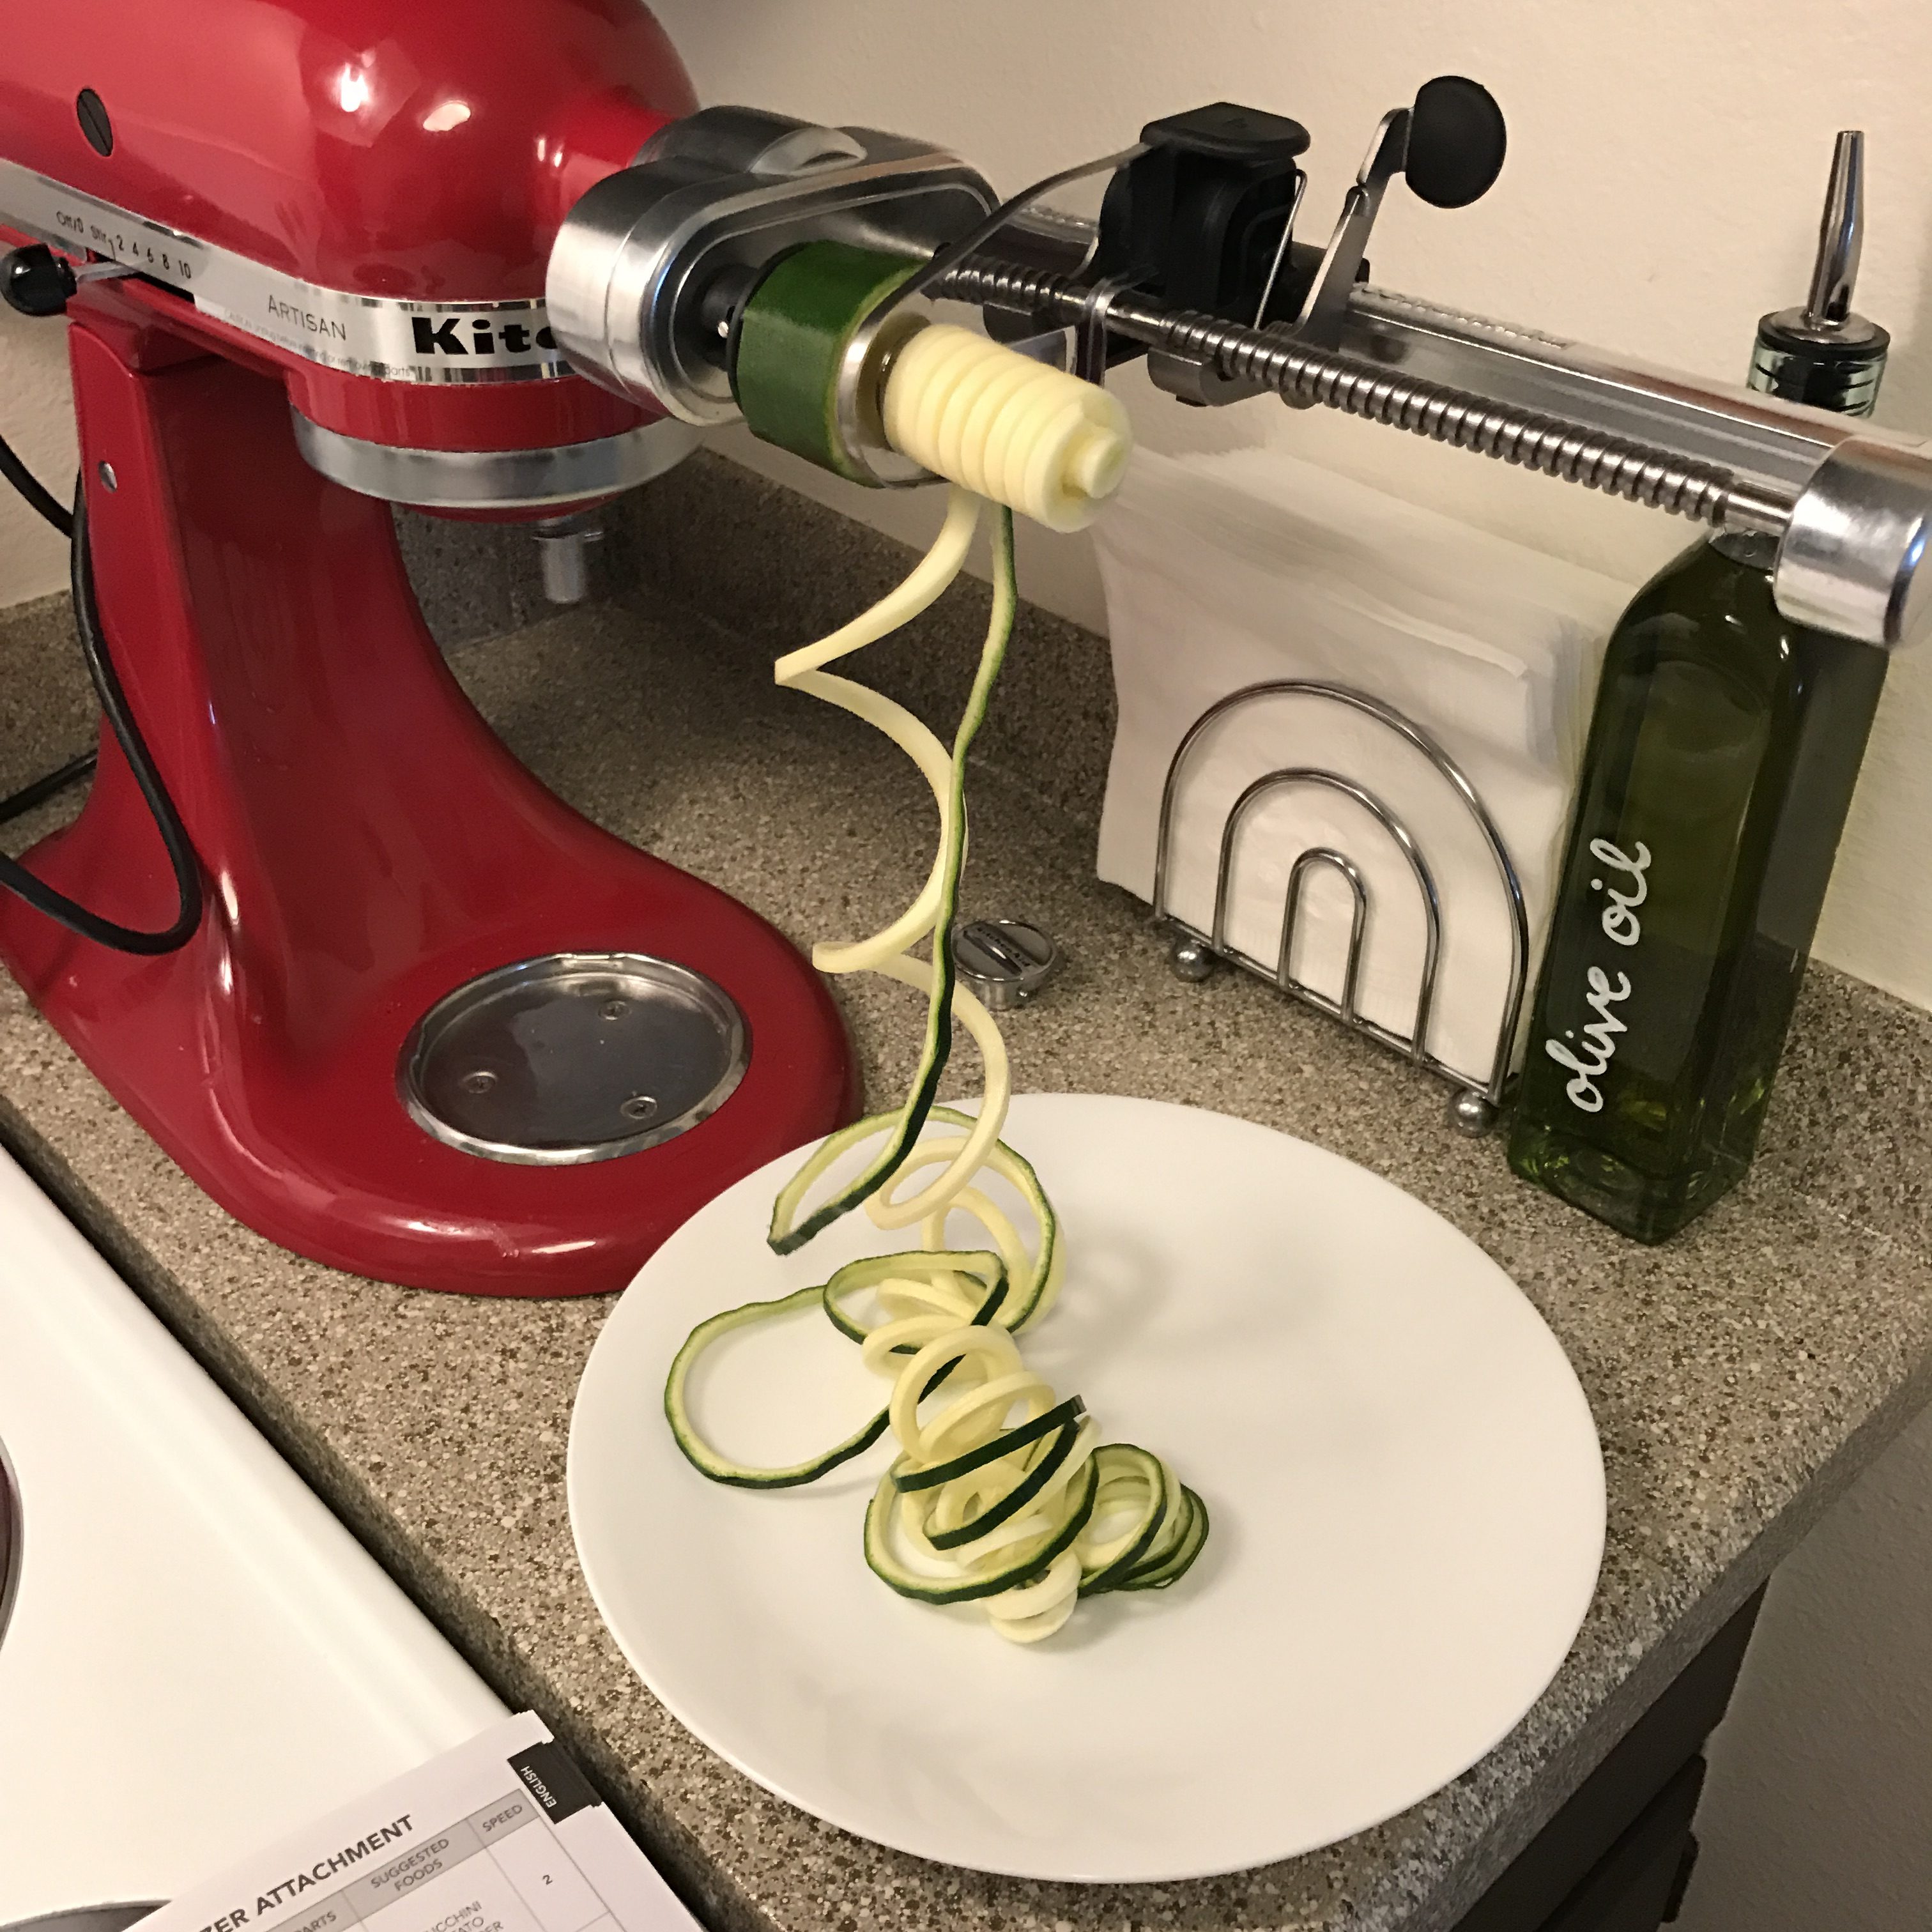 Zucchini Noodles & More – Basil Belle